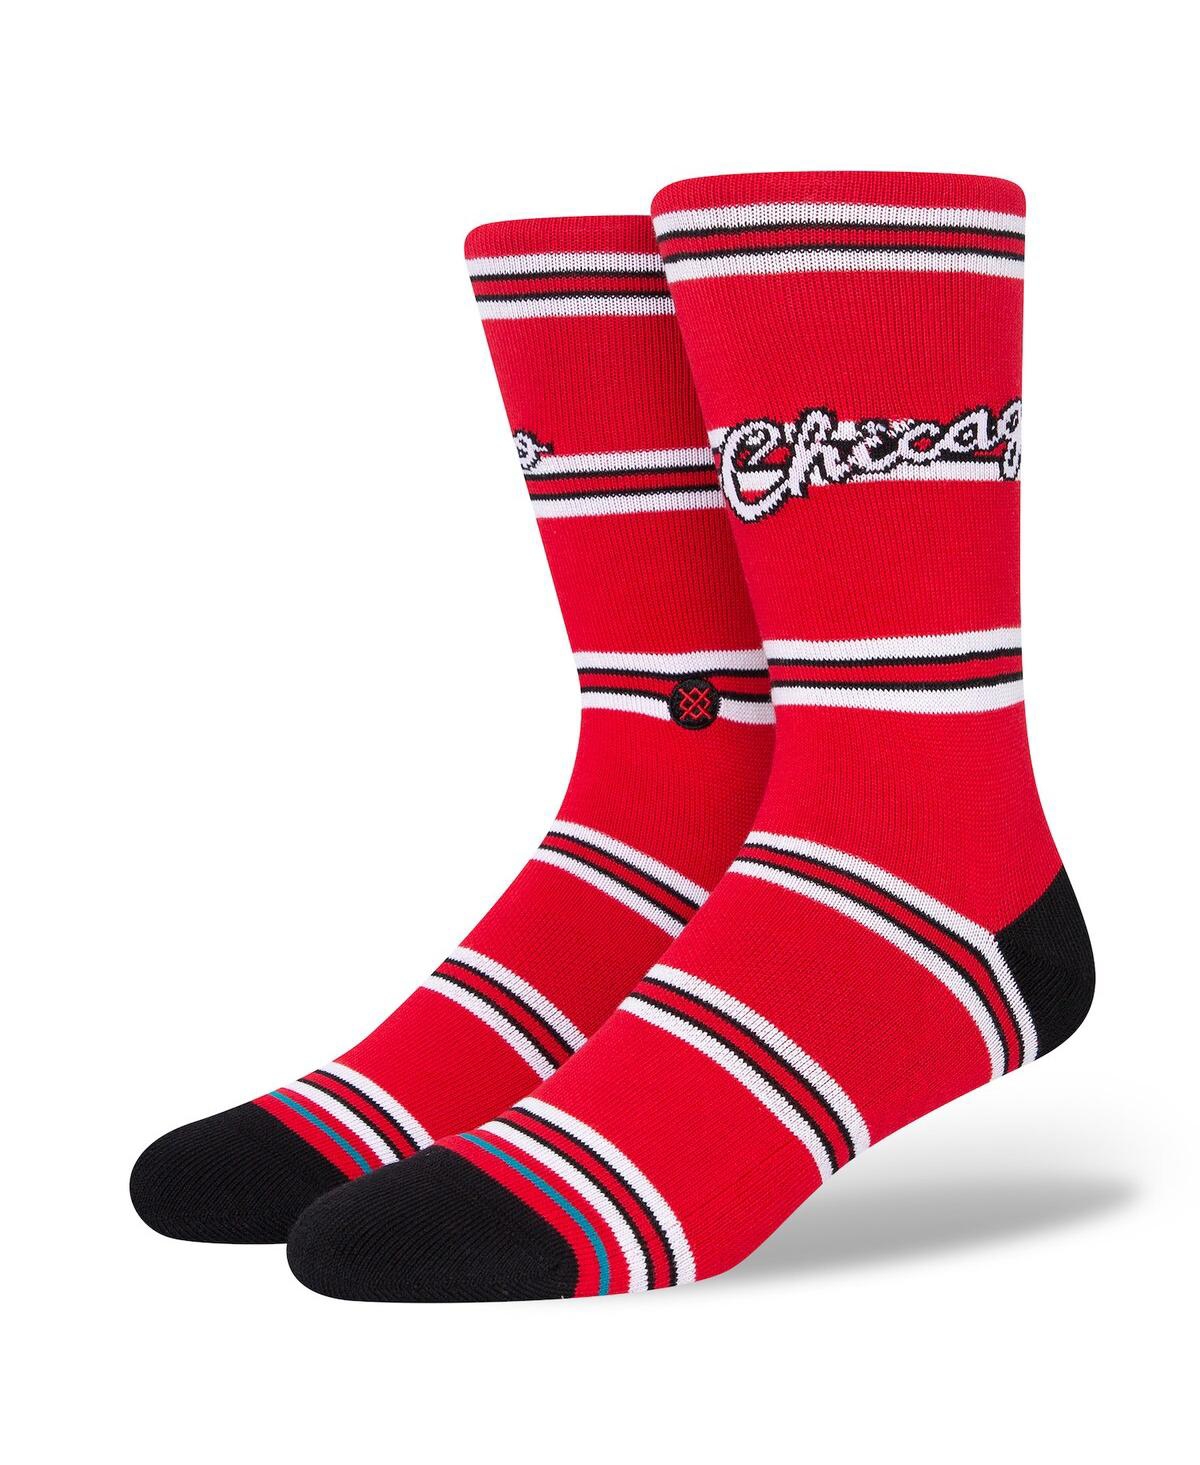 Men's Stance Chicago Bulls Hardwood Classics Stripes Crew Socks - Red